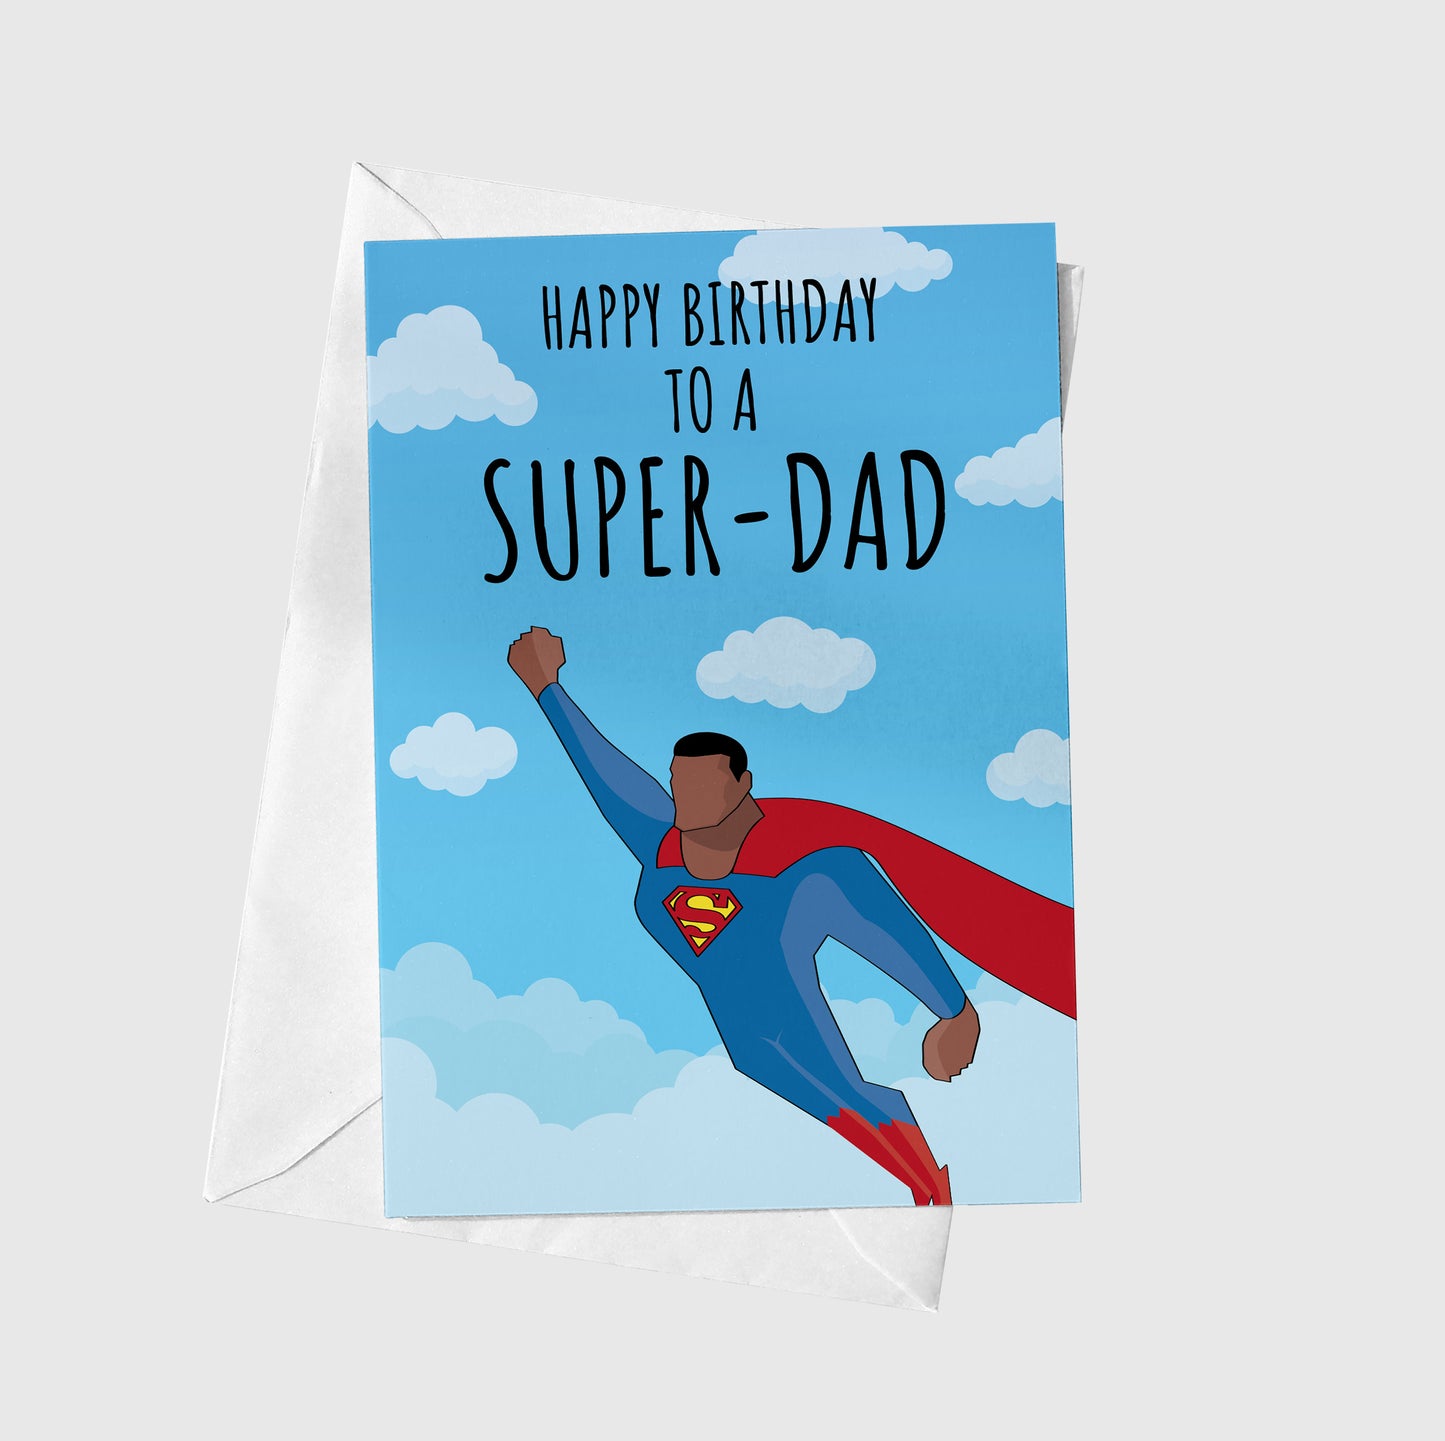 Happy Birthday Super Dad